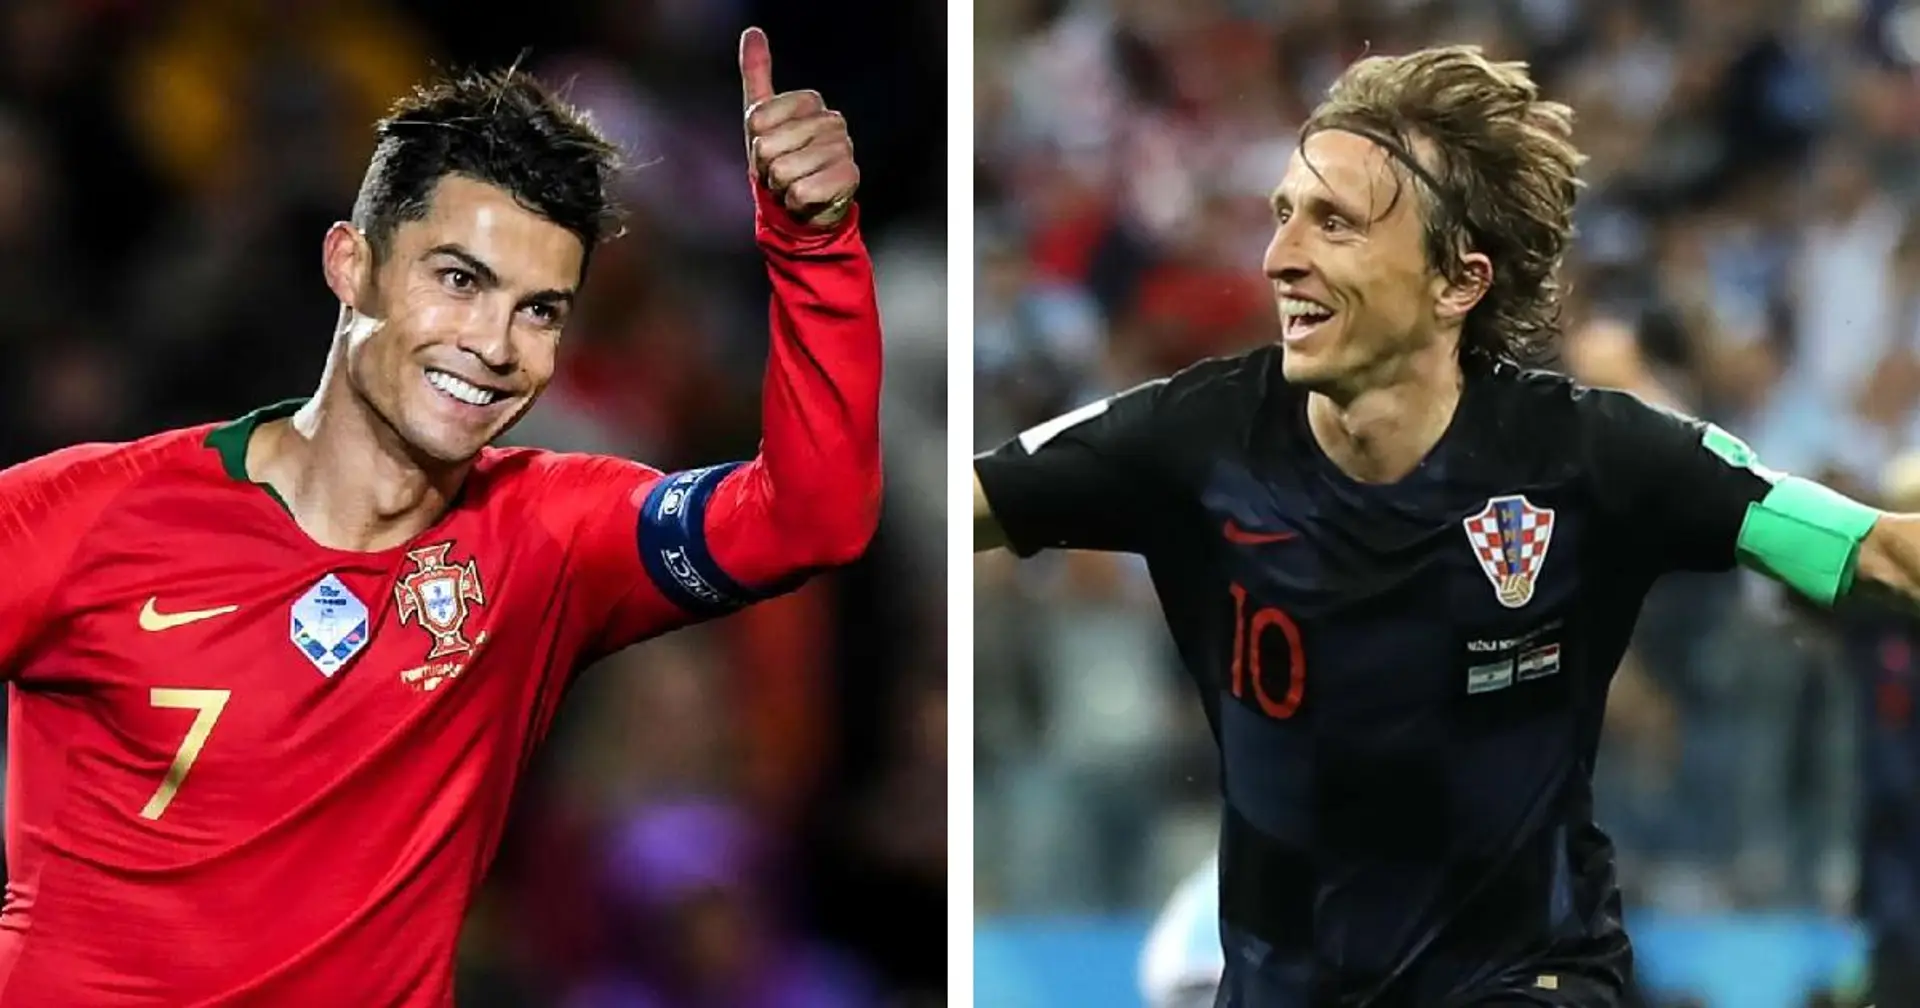 "Une conversation entre deux anciens coéquipiers, deux bons amis": Luka Modric à propos de sa rencontre avec Cristiano Ronaldo